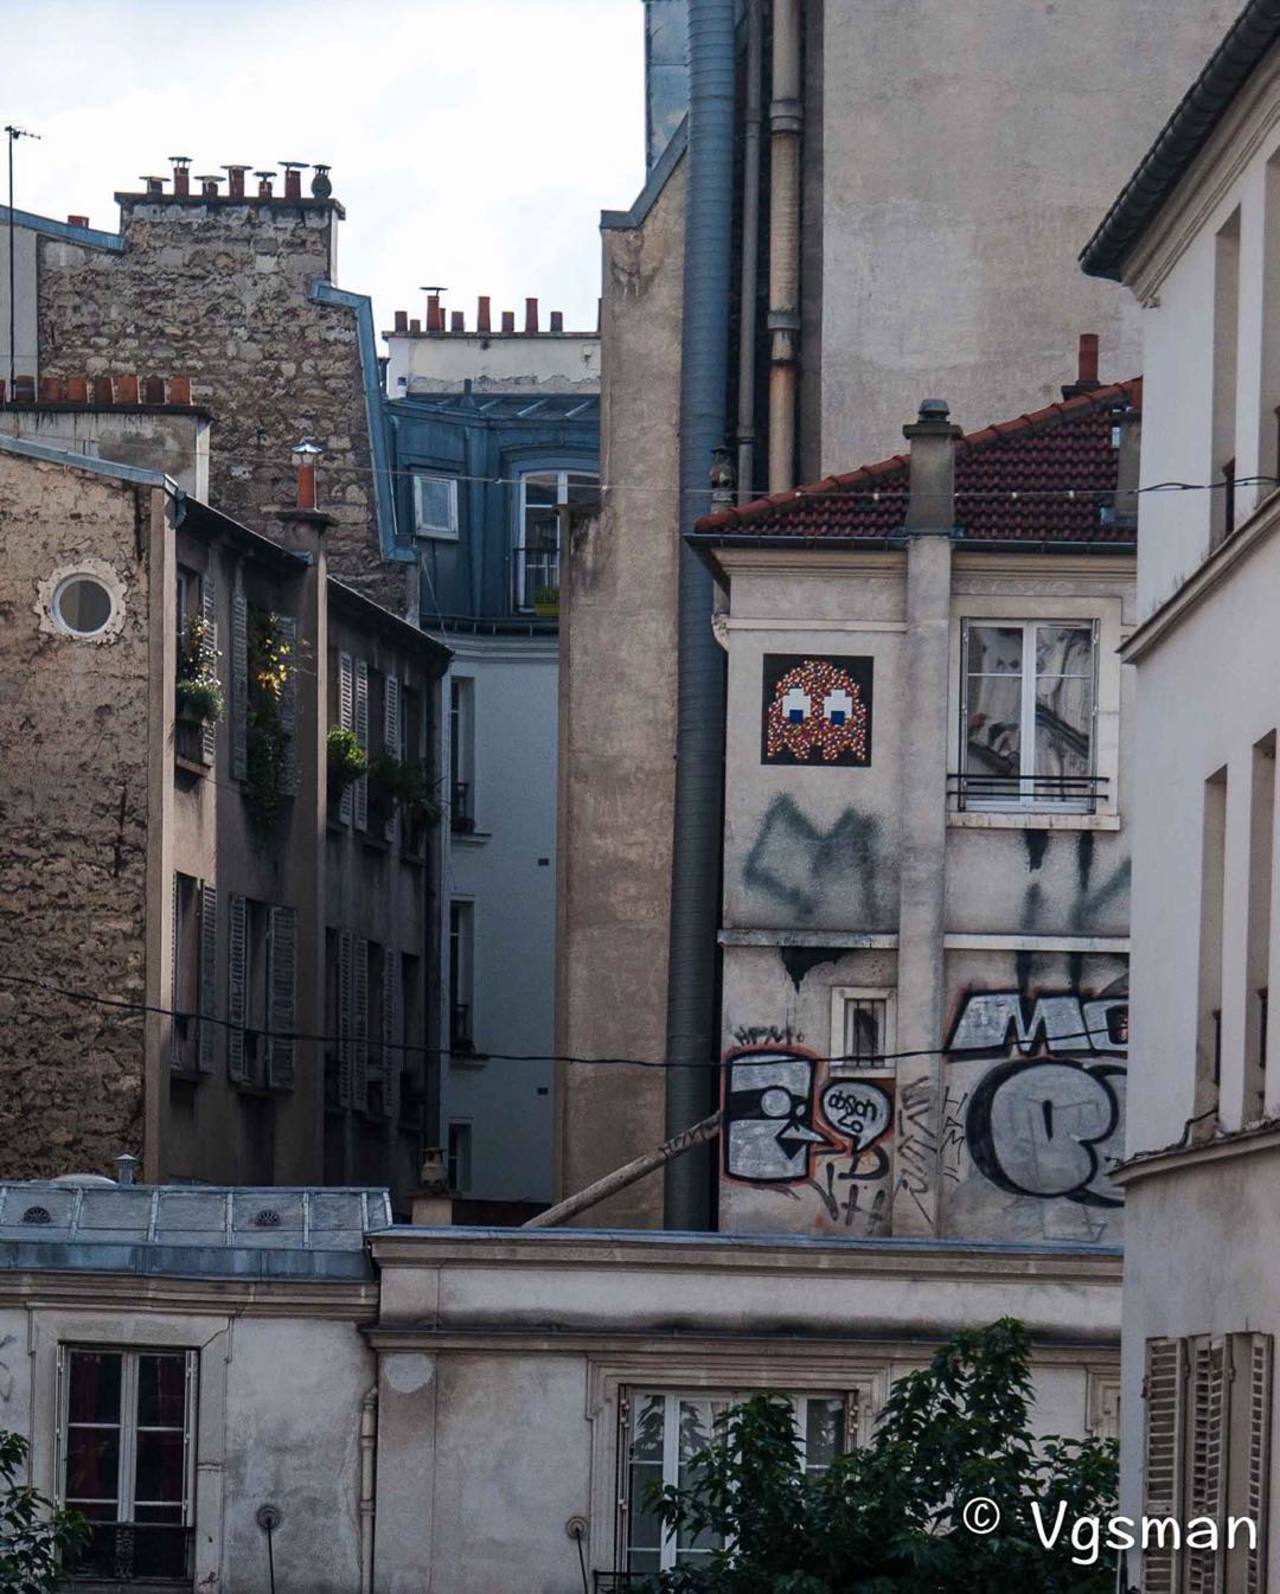 RT @circumjacent_fr: #Paris #graffiti photo by @vgsman http://ift.tt/1Lfz8Dk #StreetArt http://t.co/9ZSbQWeHAD